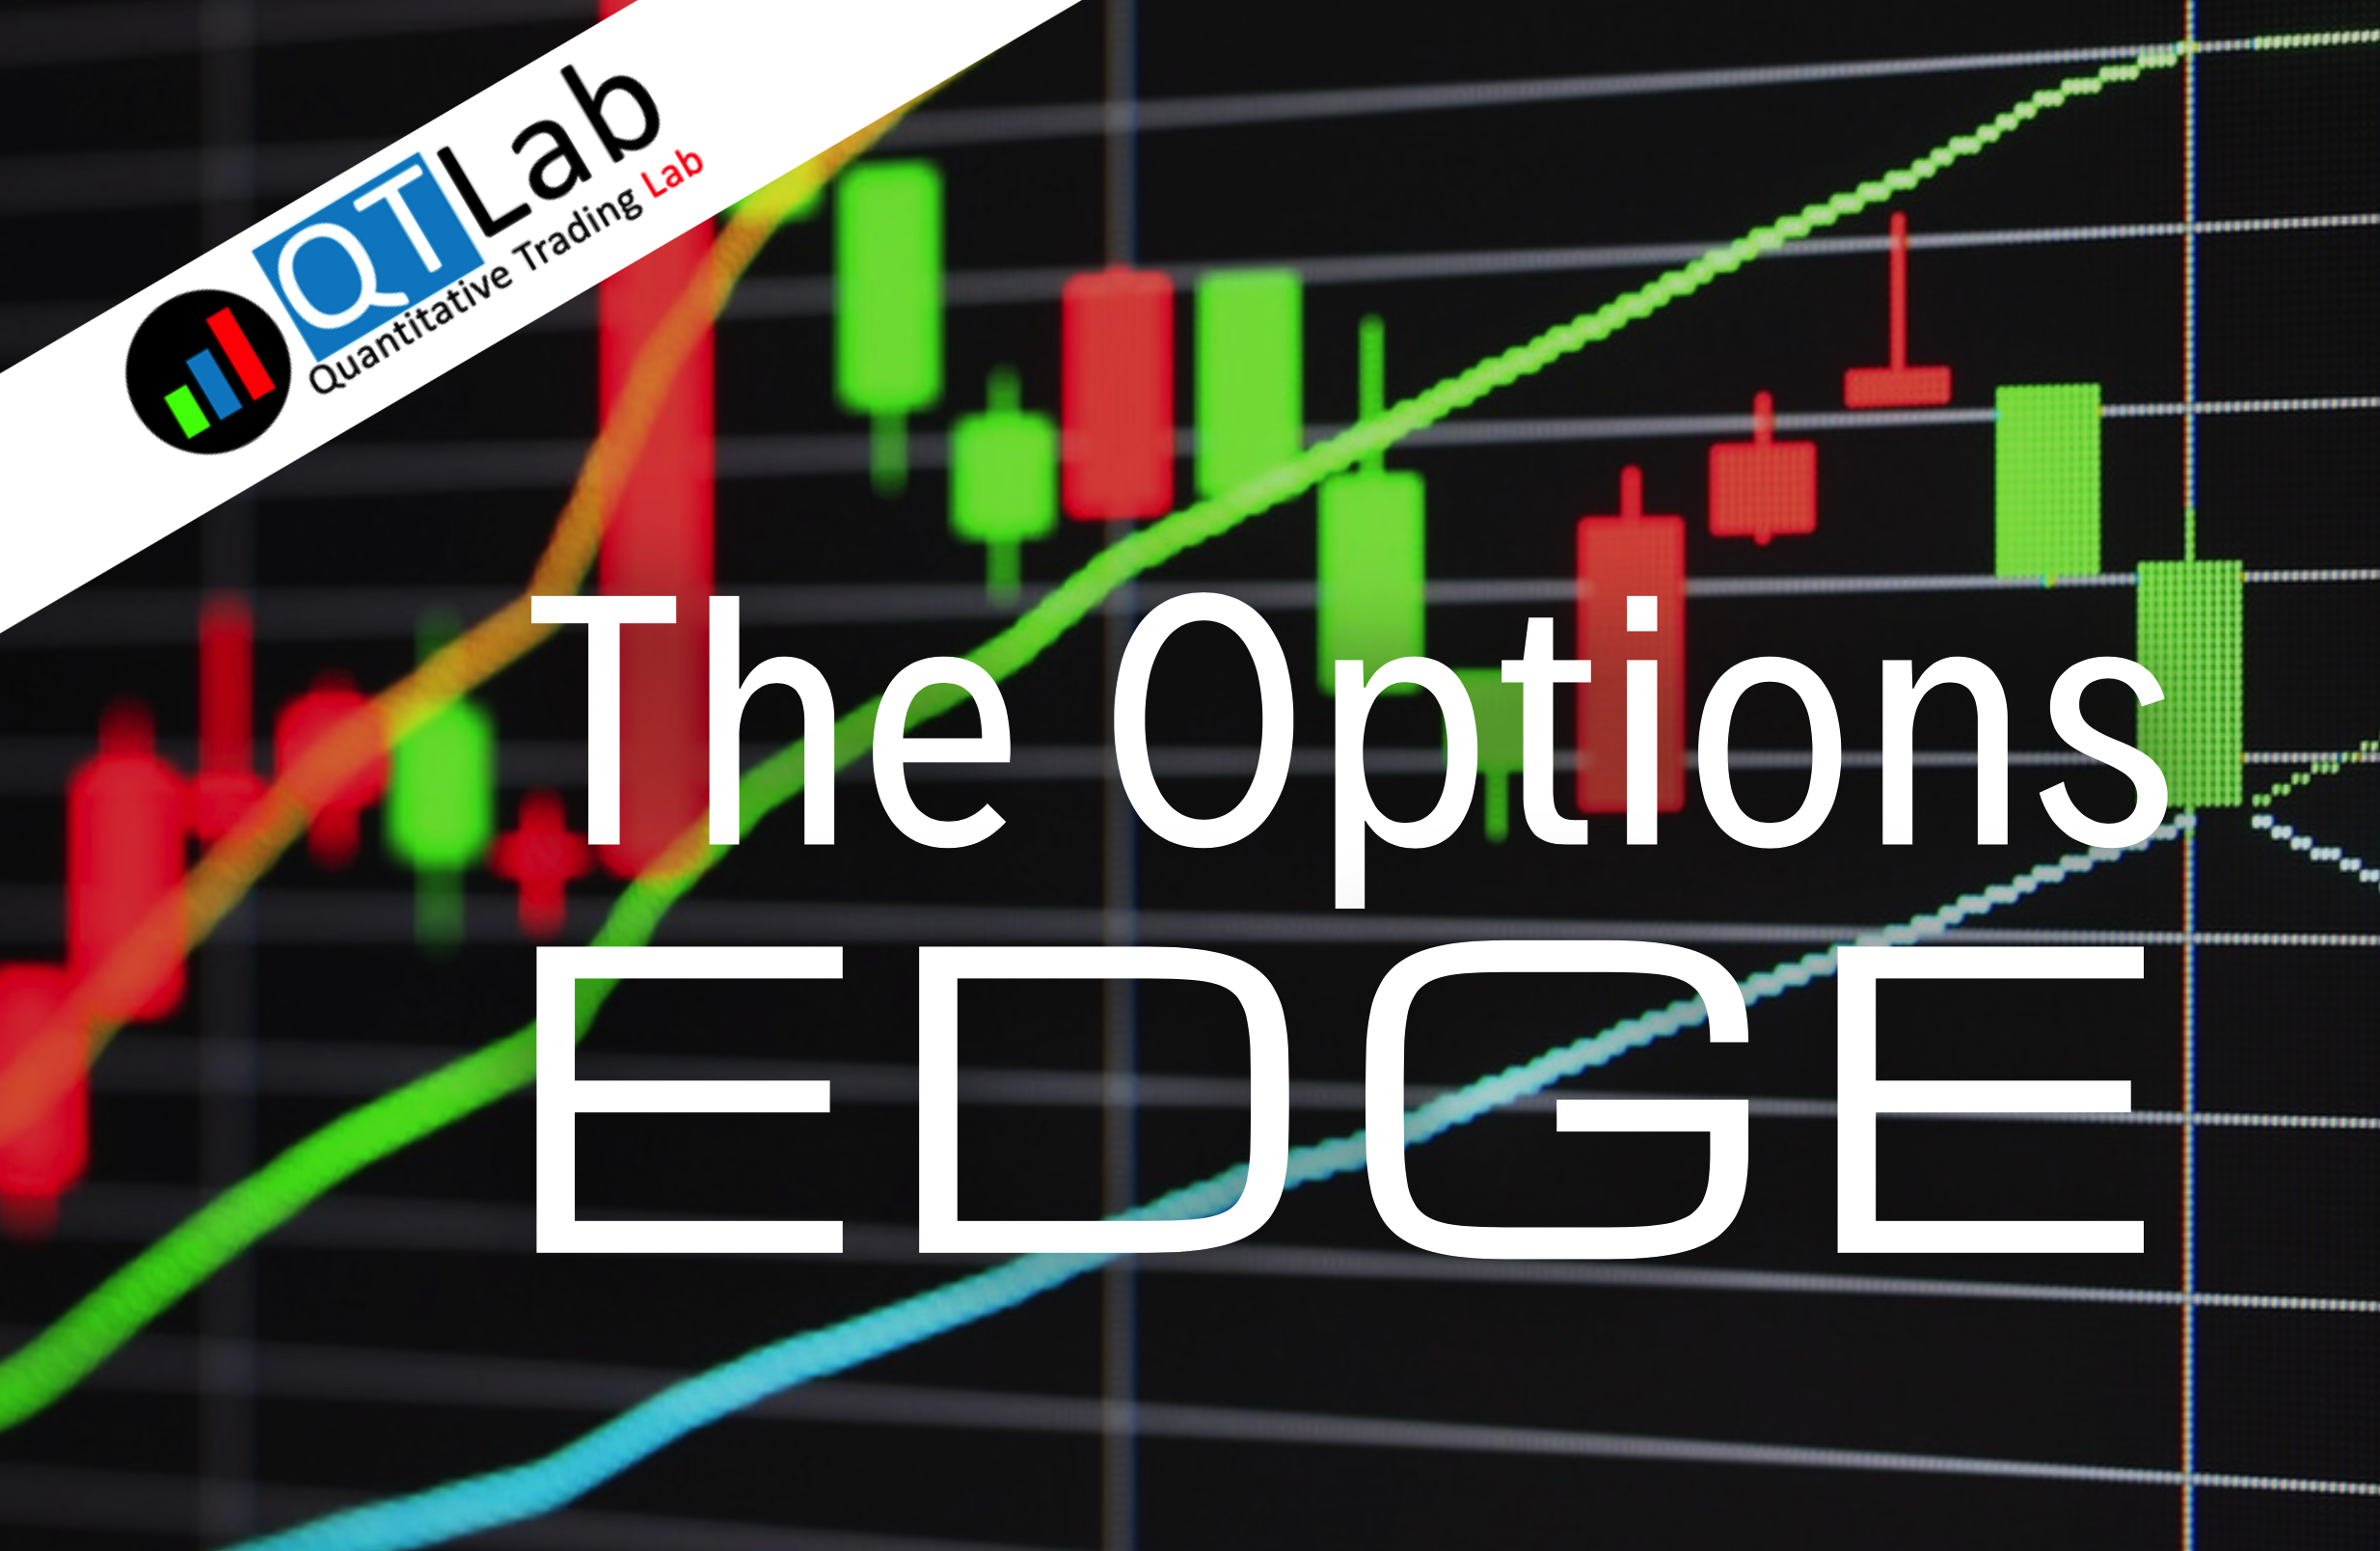 corso option edge, edge trading, trading edge, corso trading opzioni, analisi volatilità, edge trading non direzionale, greche opzioni, opzioni put e call 